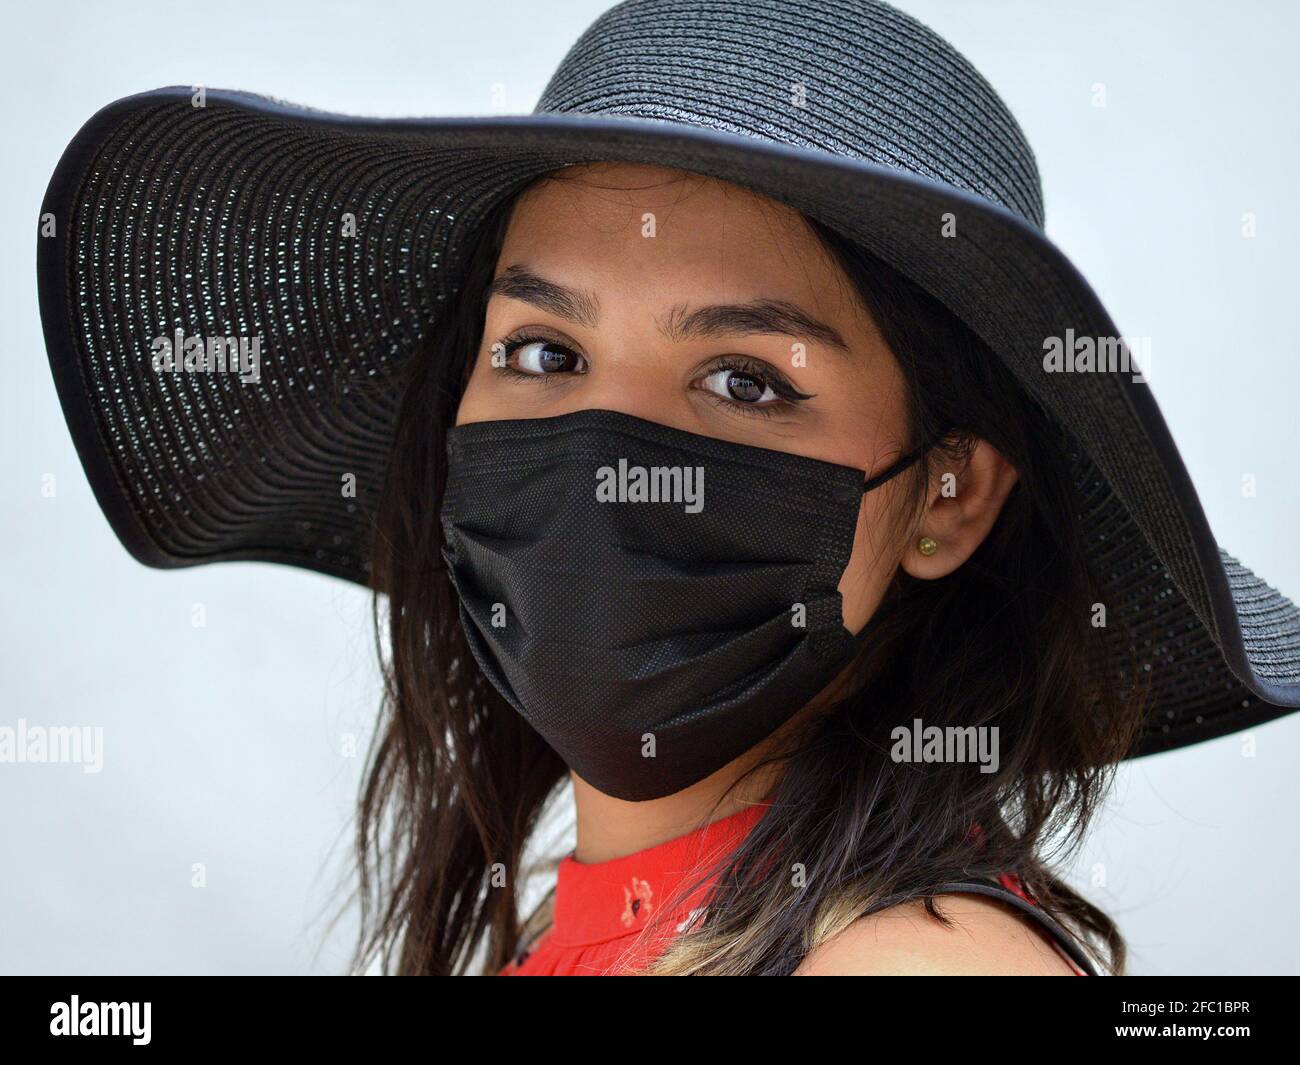 Une jeune femme brune mexicaine aux beaux yeux bruns porte un chapeau de soleil noir et un masque jetable noir pendant la pandémie du coronavirus. Banque D'Images